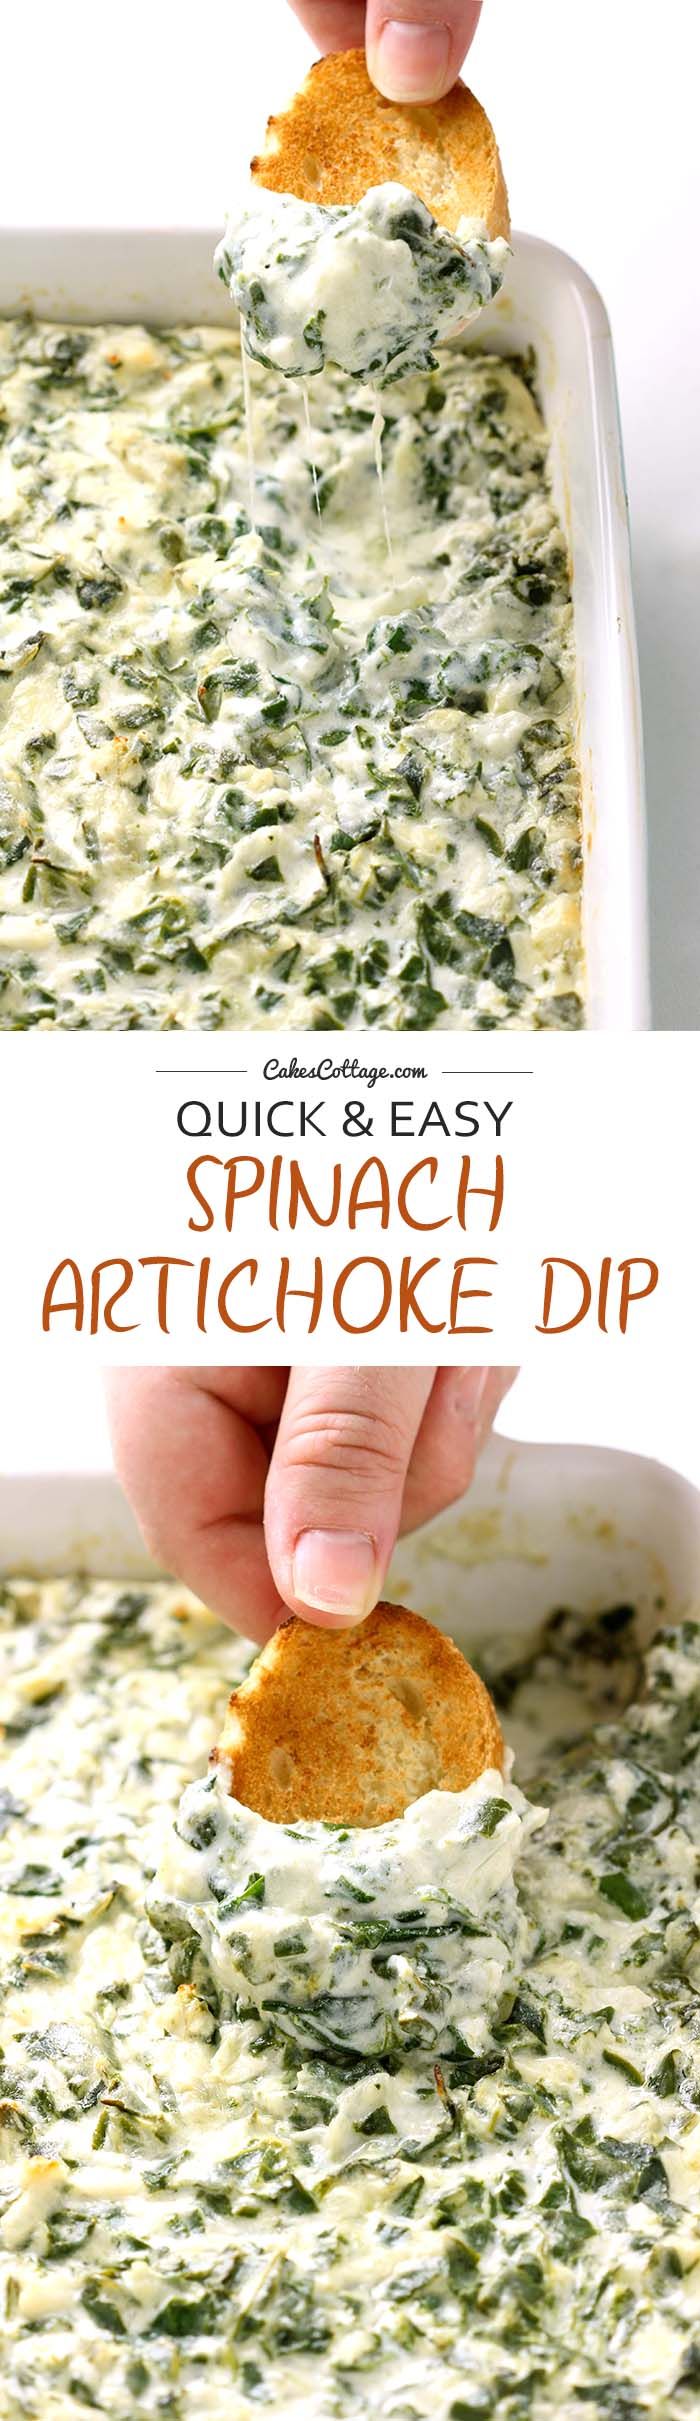 Easy Spinach Artichoke Dip